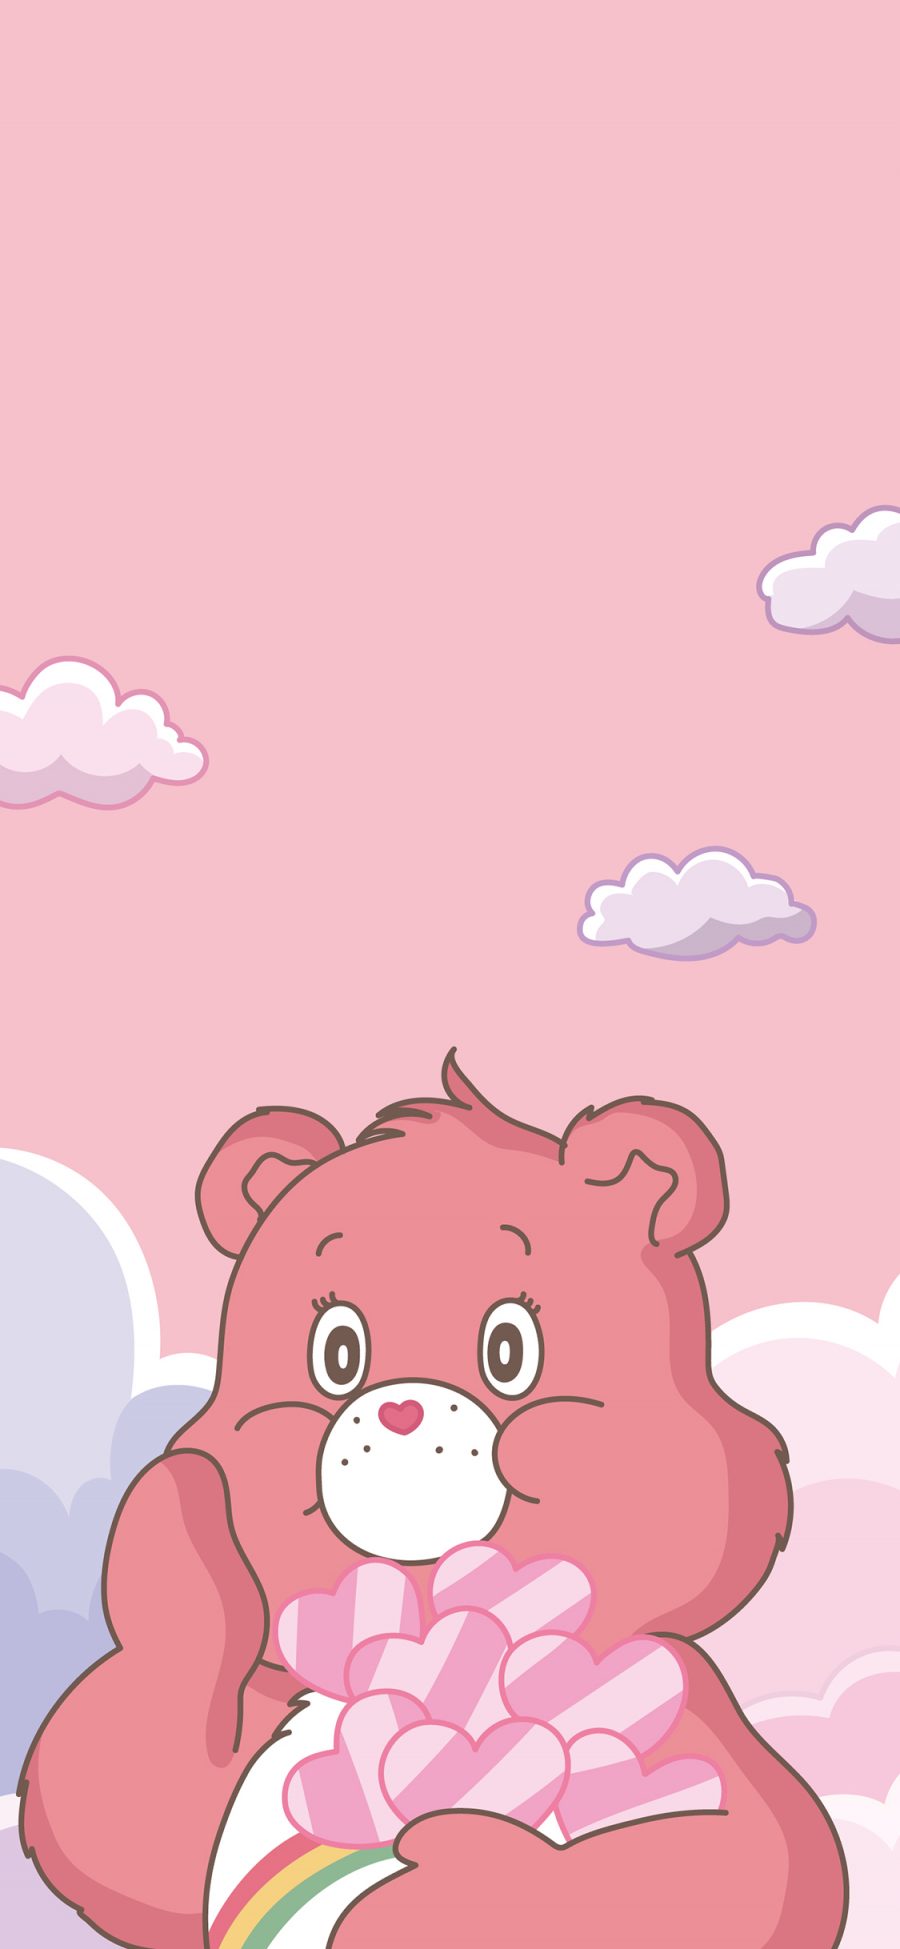 [2436×1125]爱心熊 粉色 可爱 动画 苹果手机动漫壁纸图片